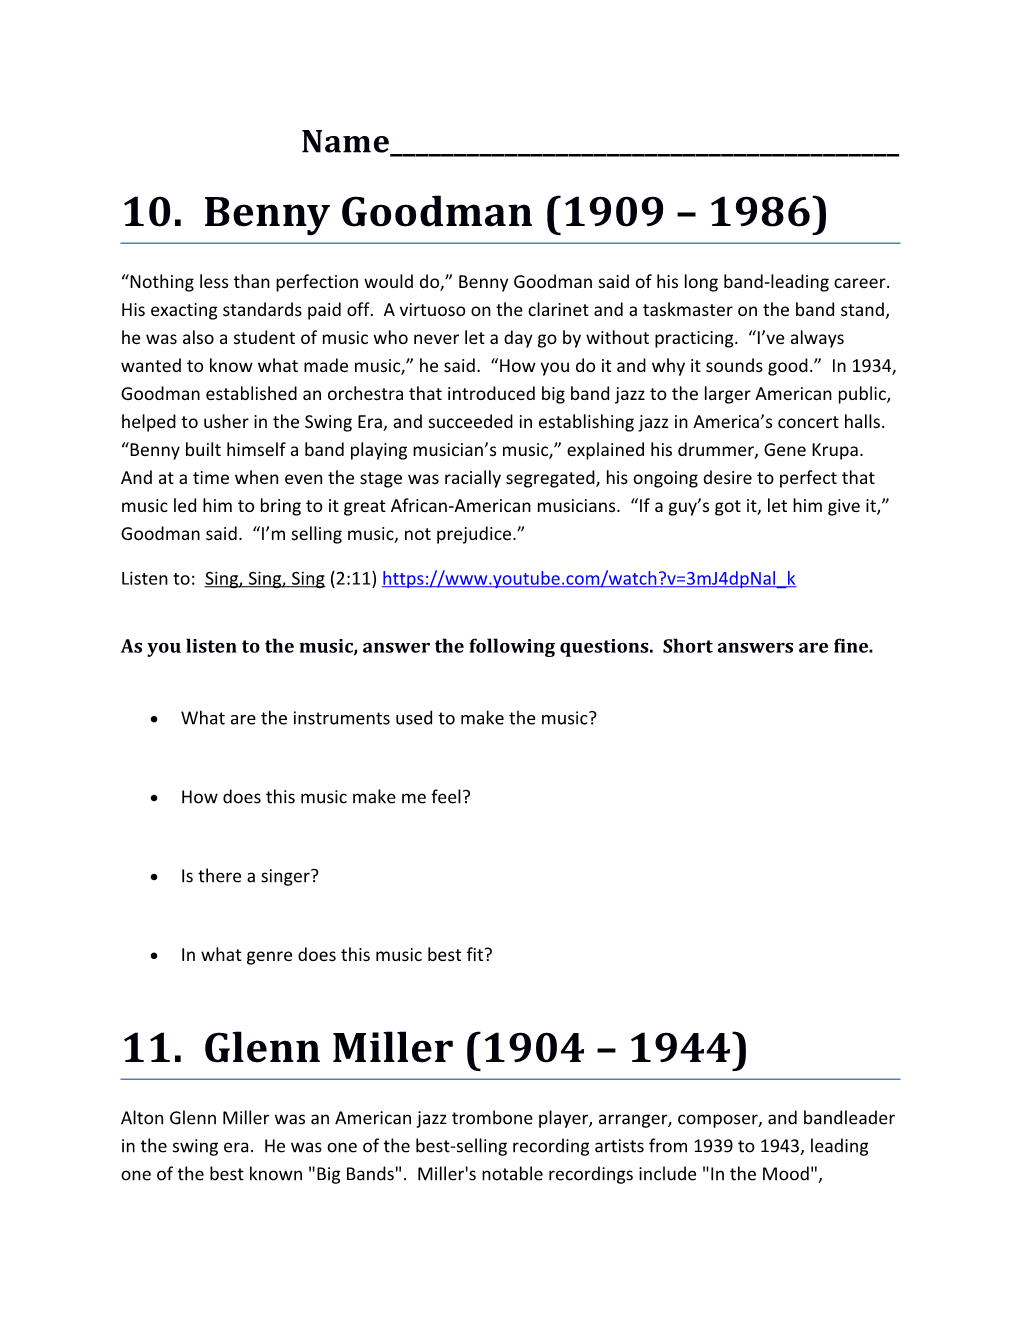 10. Benny Goodman (1909 1986)